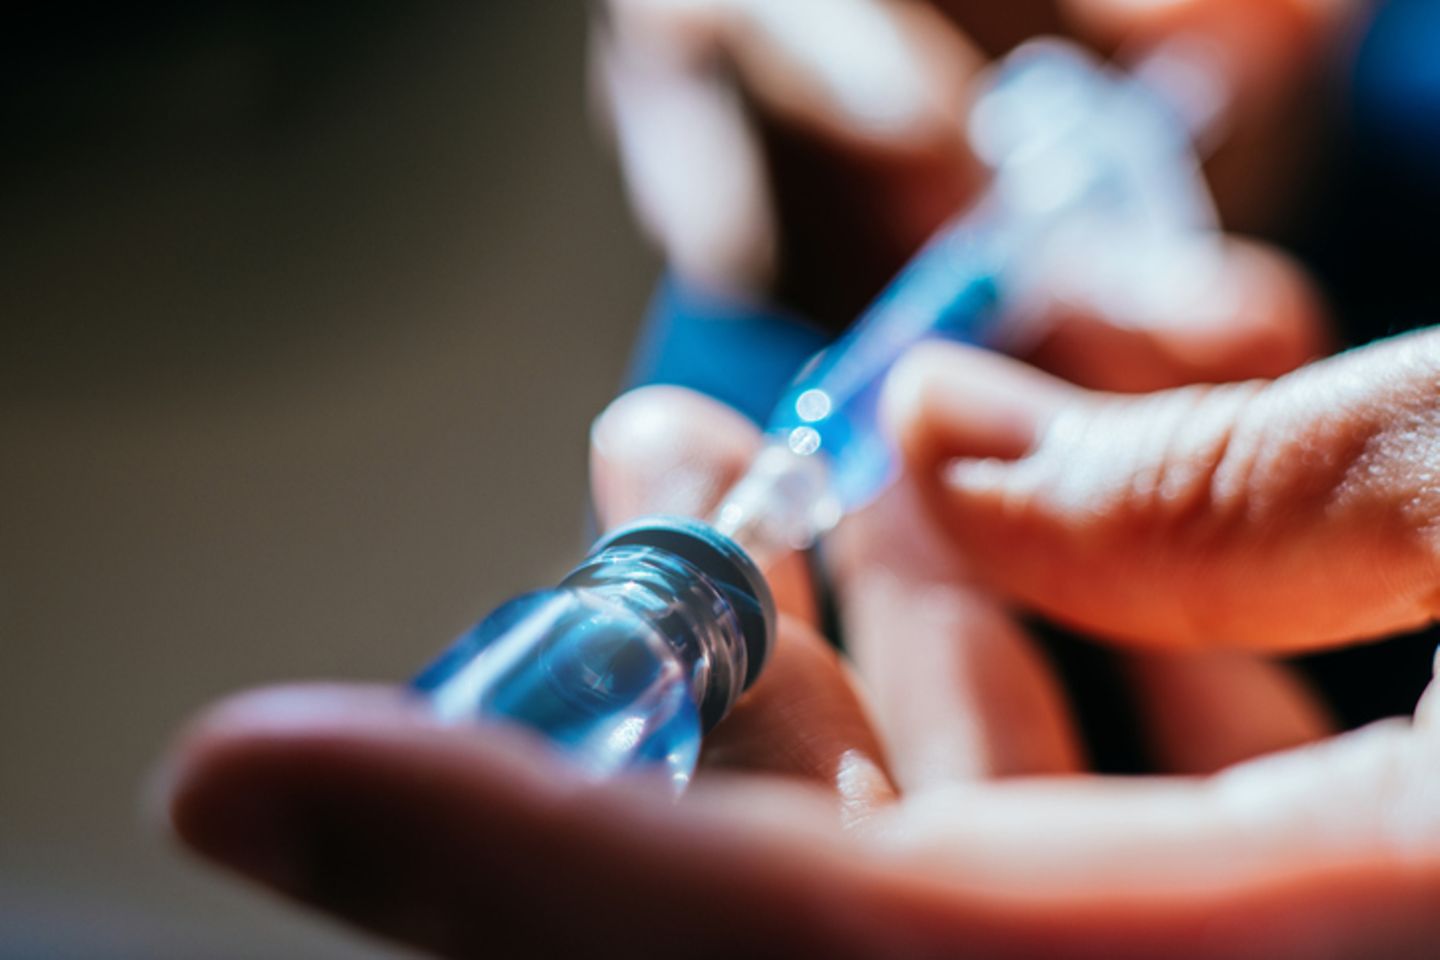 Zwei Hände halten eine Spritze und ein medizinisches Glasfläschchen mit einer blauen Flüssigkeit